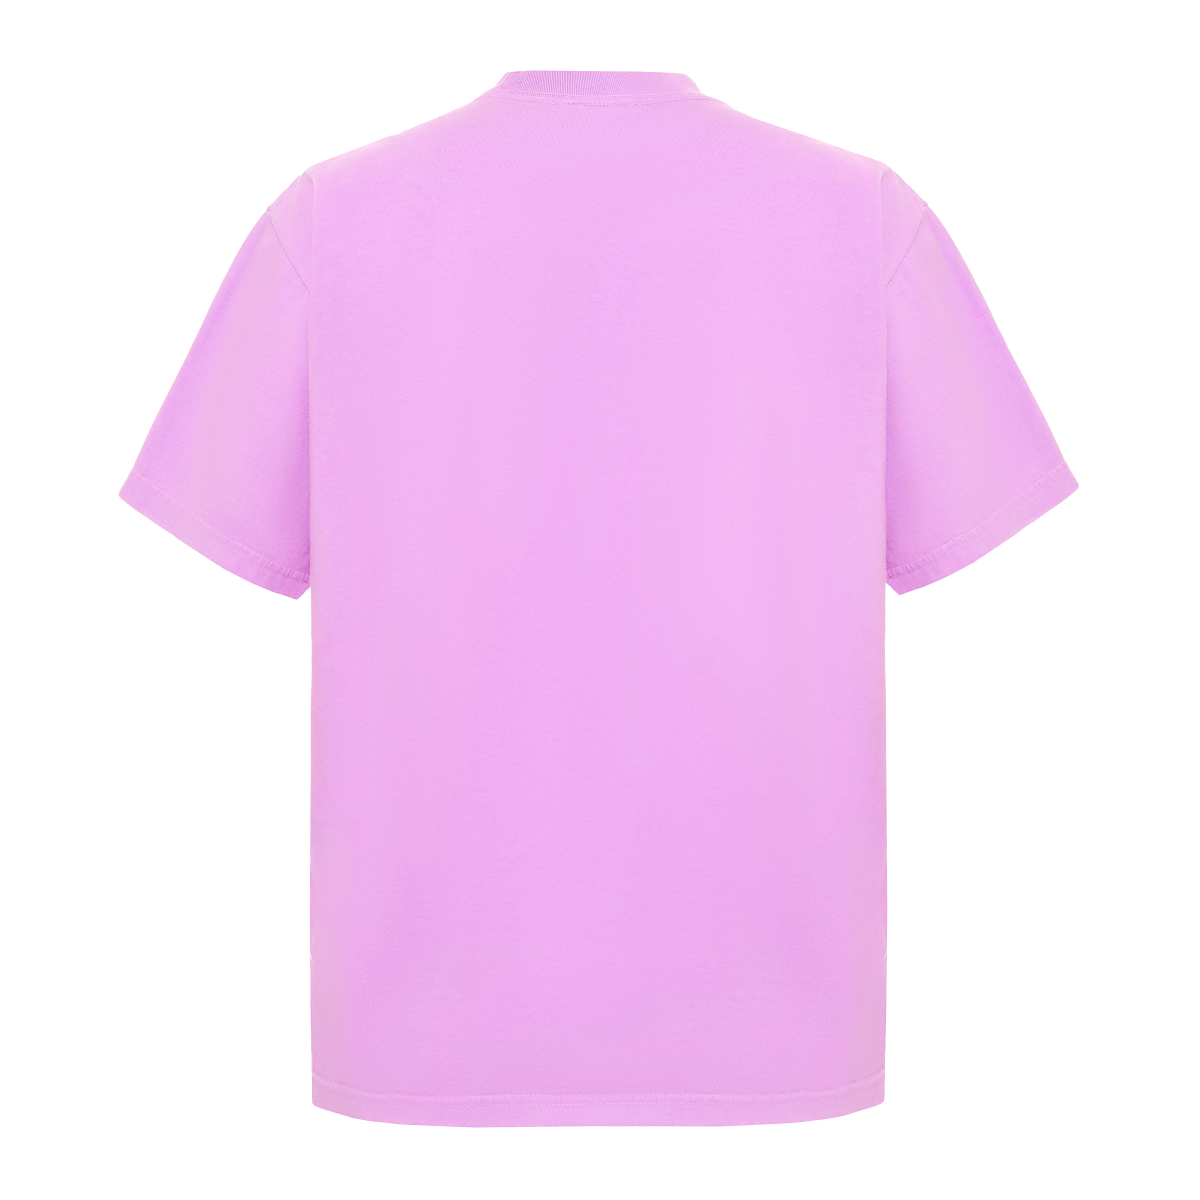 Garment Dye T-Shirt - Standard Size - Pastel Purple